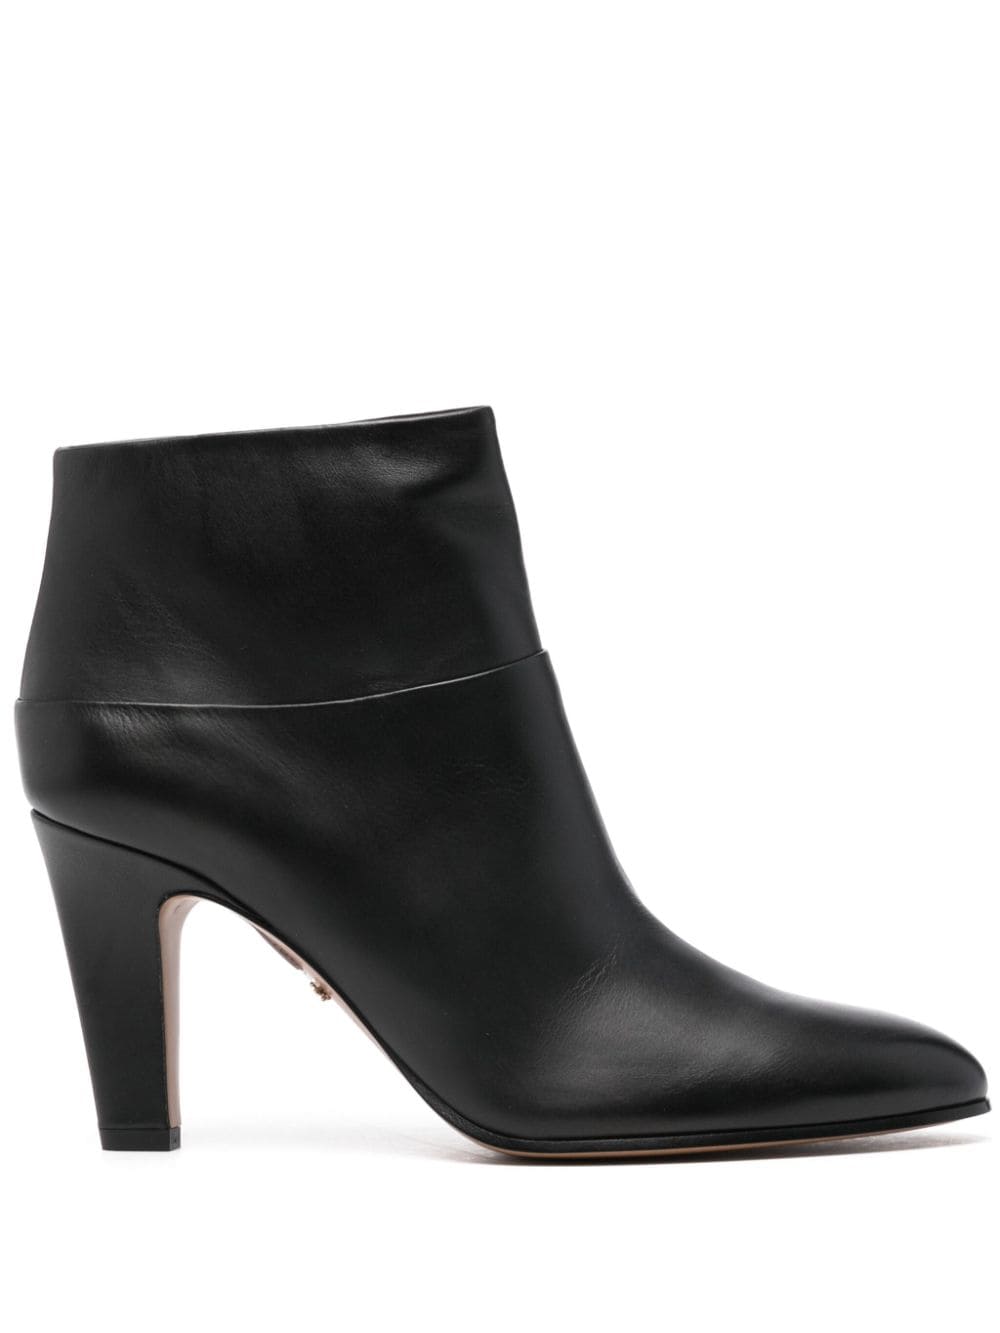 Chloé leather ankle boots - Black von Chloé